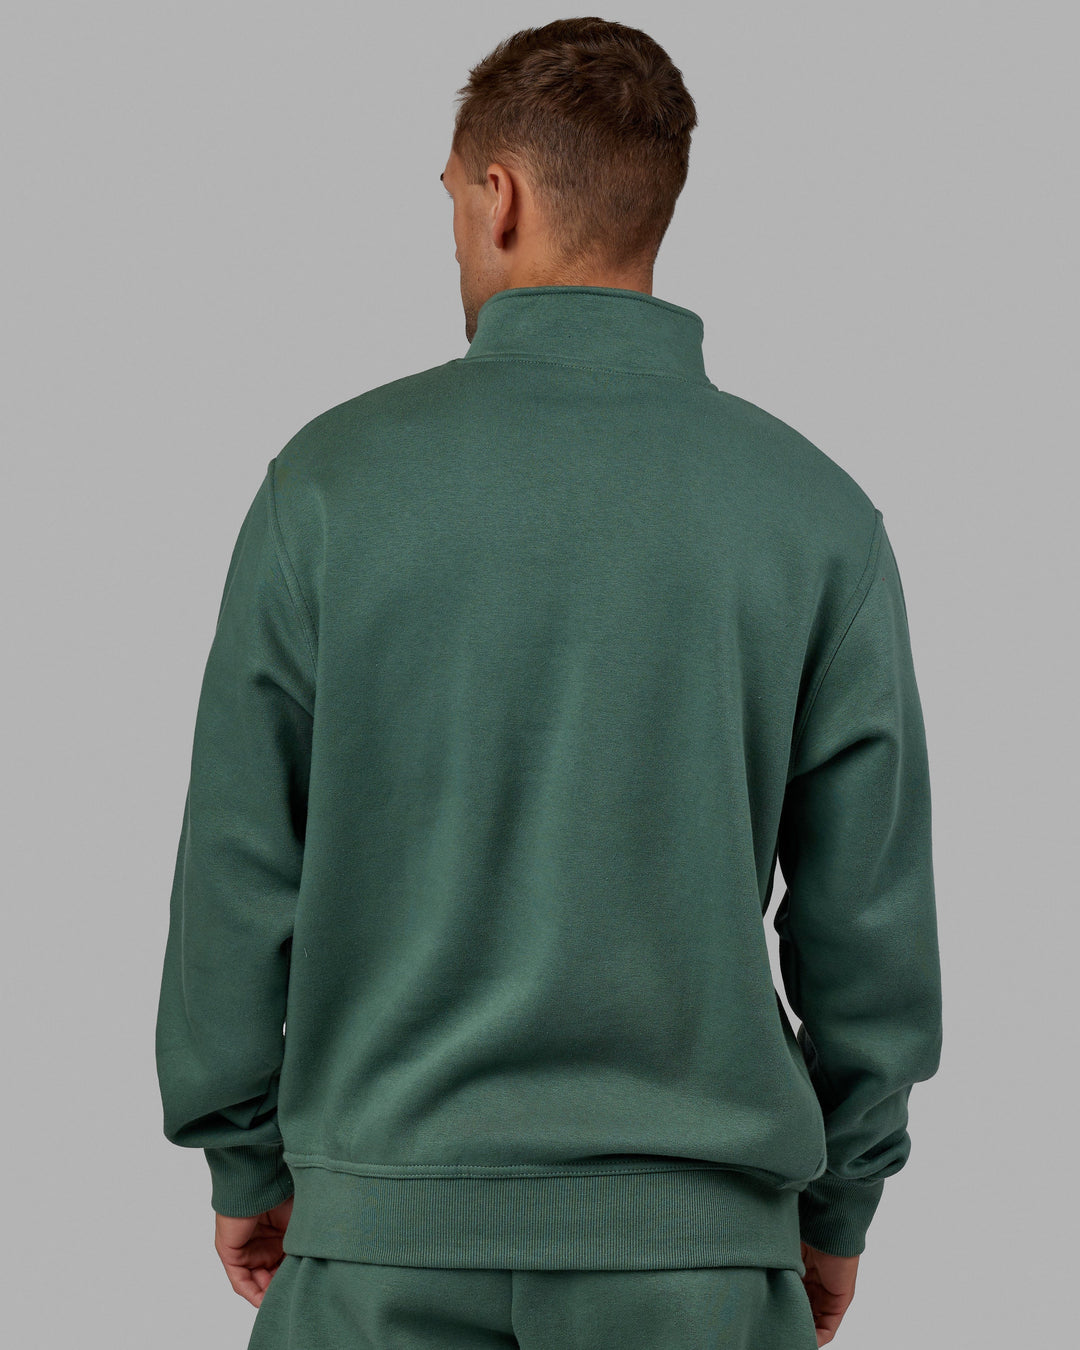 Man wearing Unisex Fundamental 1/4 Zip Sweater - Dark Forest